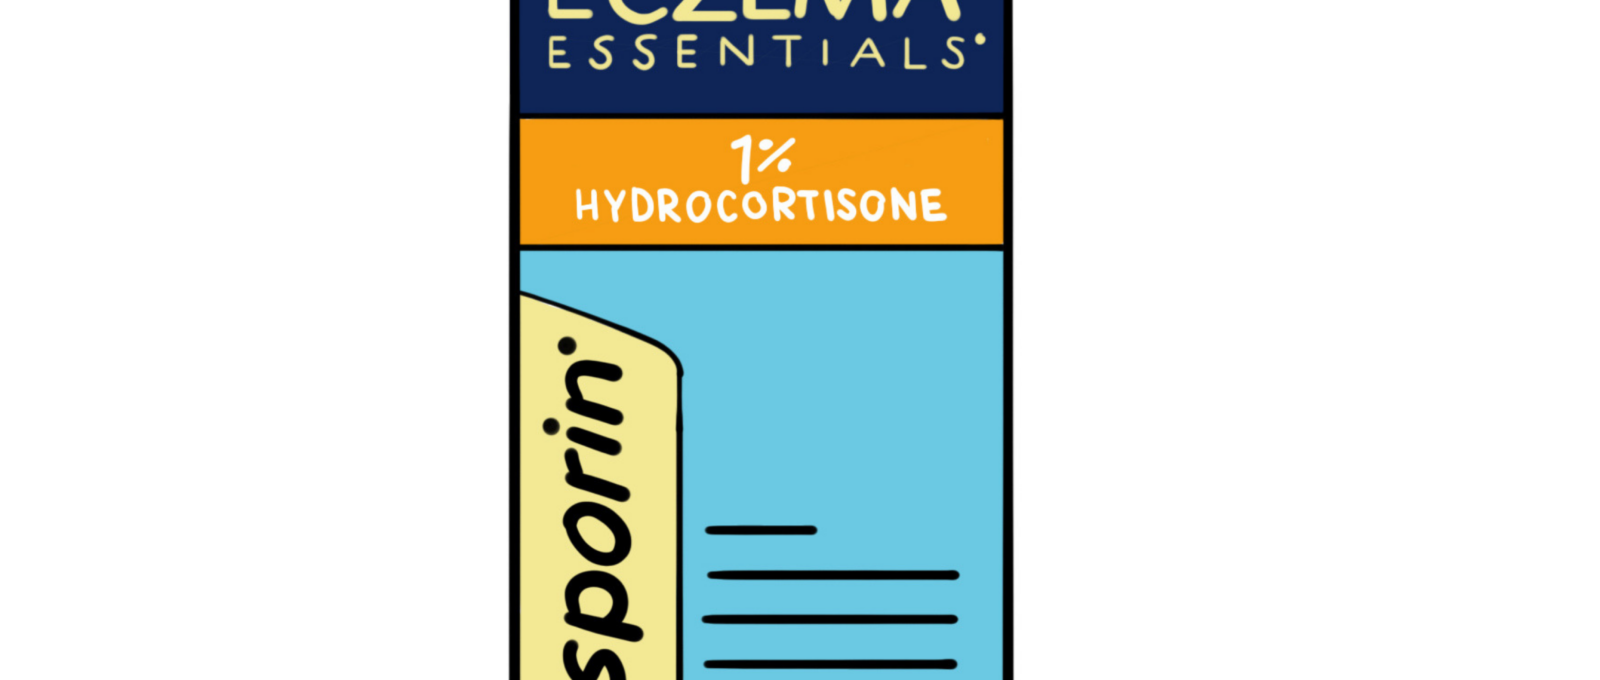 Polysporin Eczema Essentials 1% Hydrocortisone